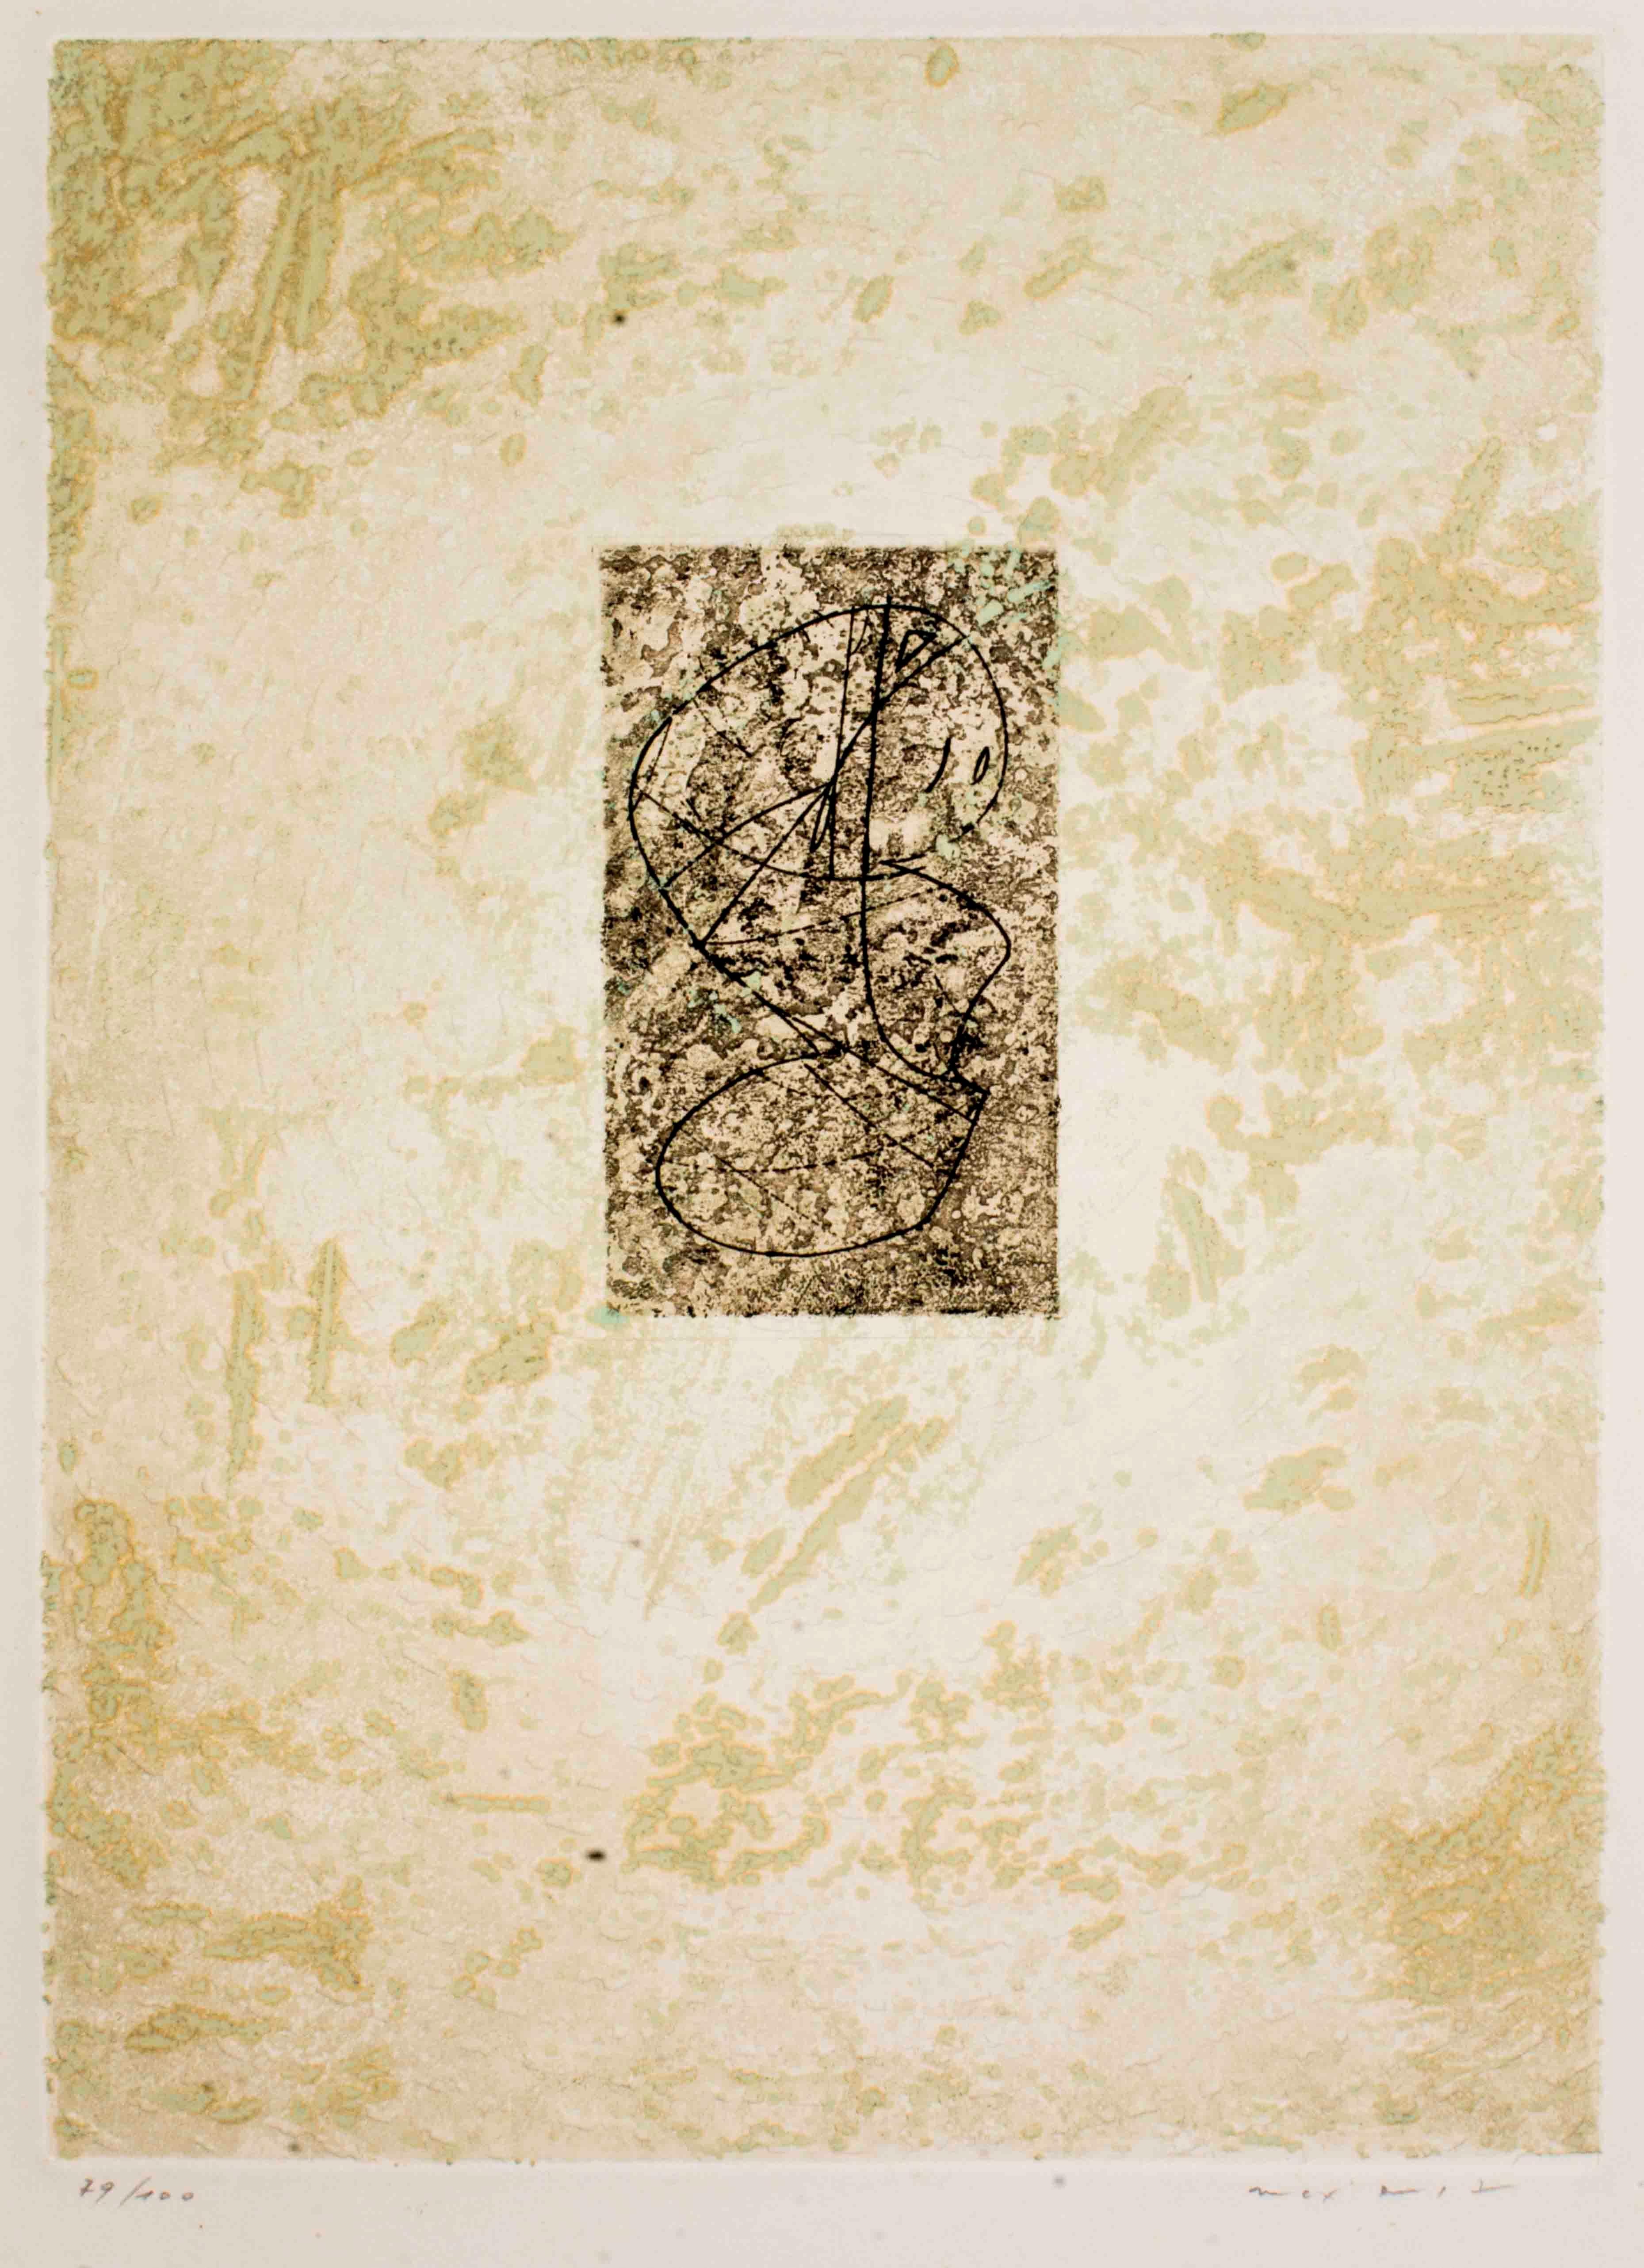 " Zodiaque " est une gravure réalisée par Max Ernst en 1971. Ce tirage est signé à la main et numéroté. Il s'agit d'une édition de 100 exemplaires.

Référence : Catalogue Spies n. 144.

D'abord militant de DADA en Allemagne, Max Ernst (1891-1976)